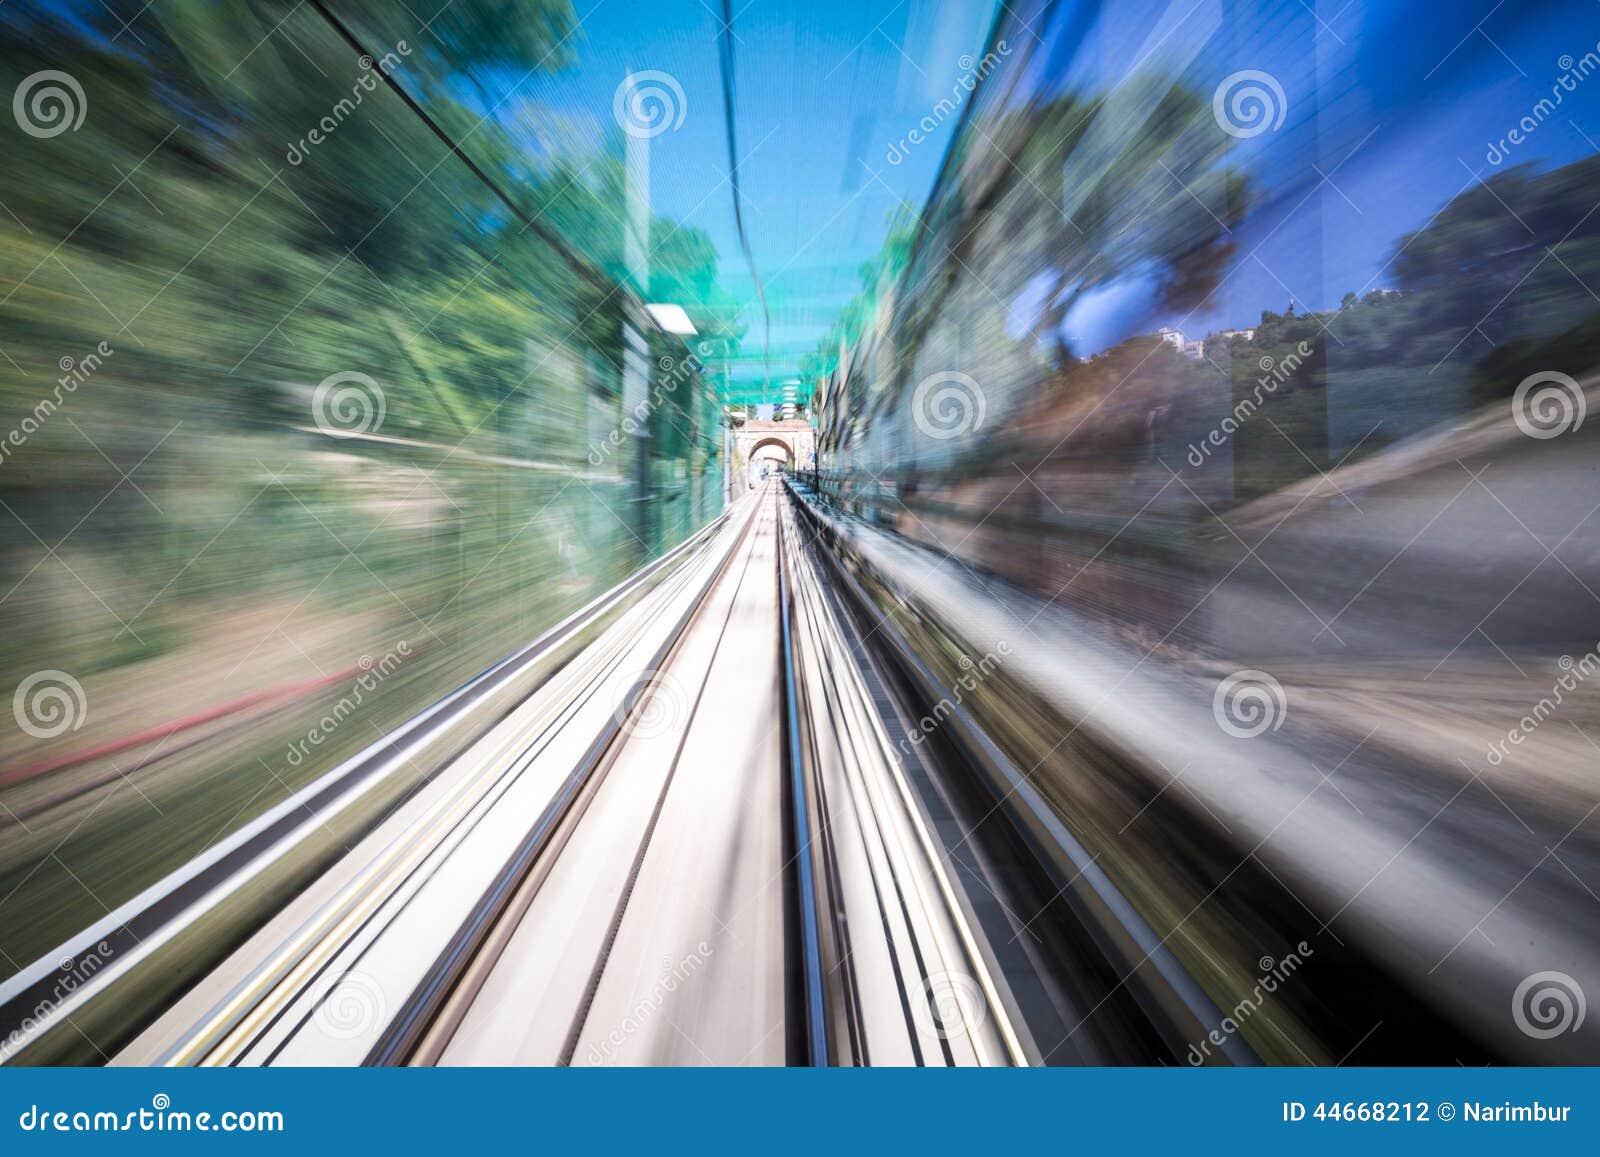 Звук движущегося поезда. Поезд в движении размытый вид сбоку.